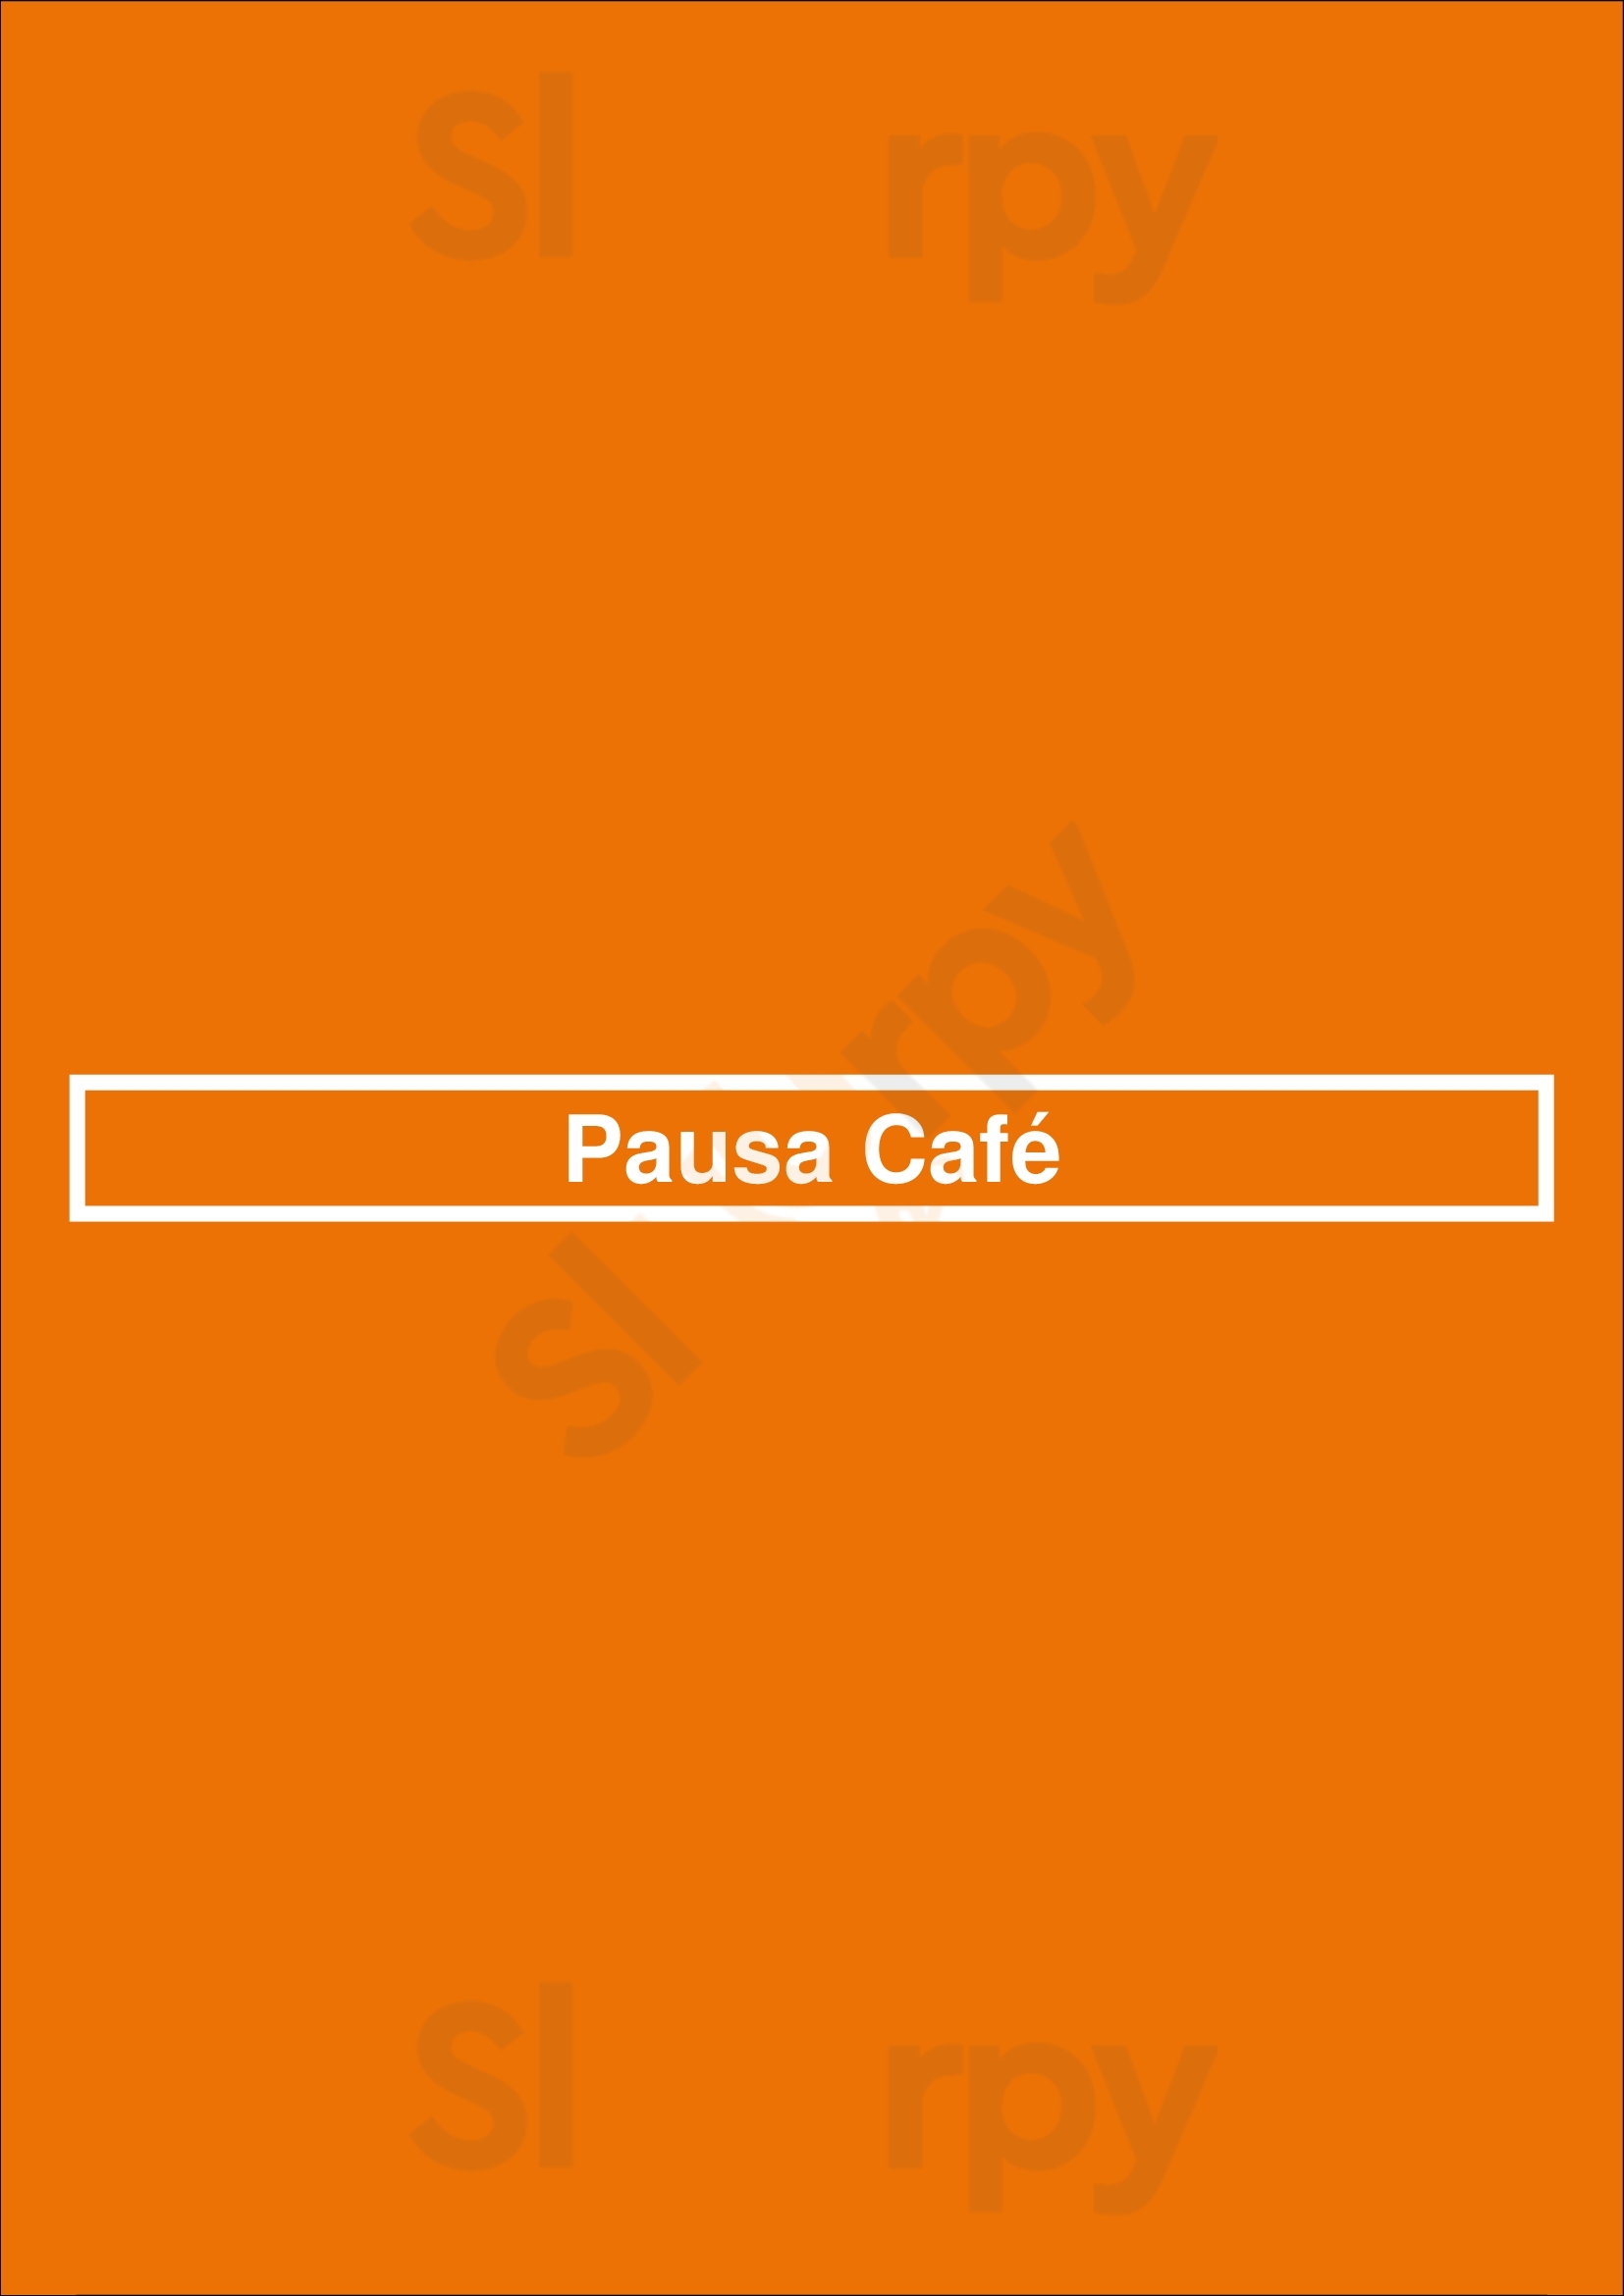 Pausa Café San Isidro Menu - 1